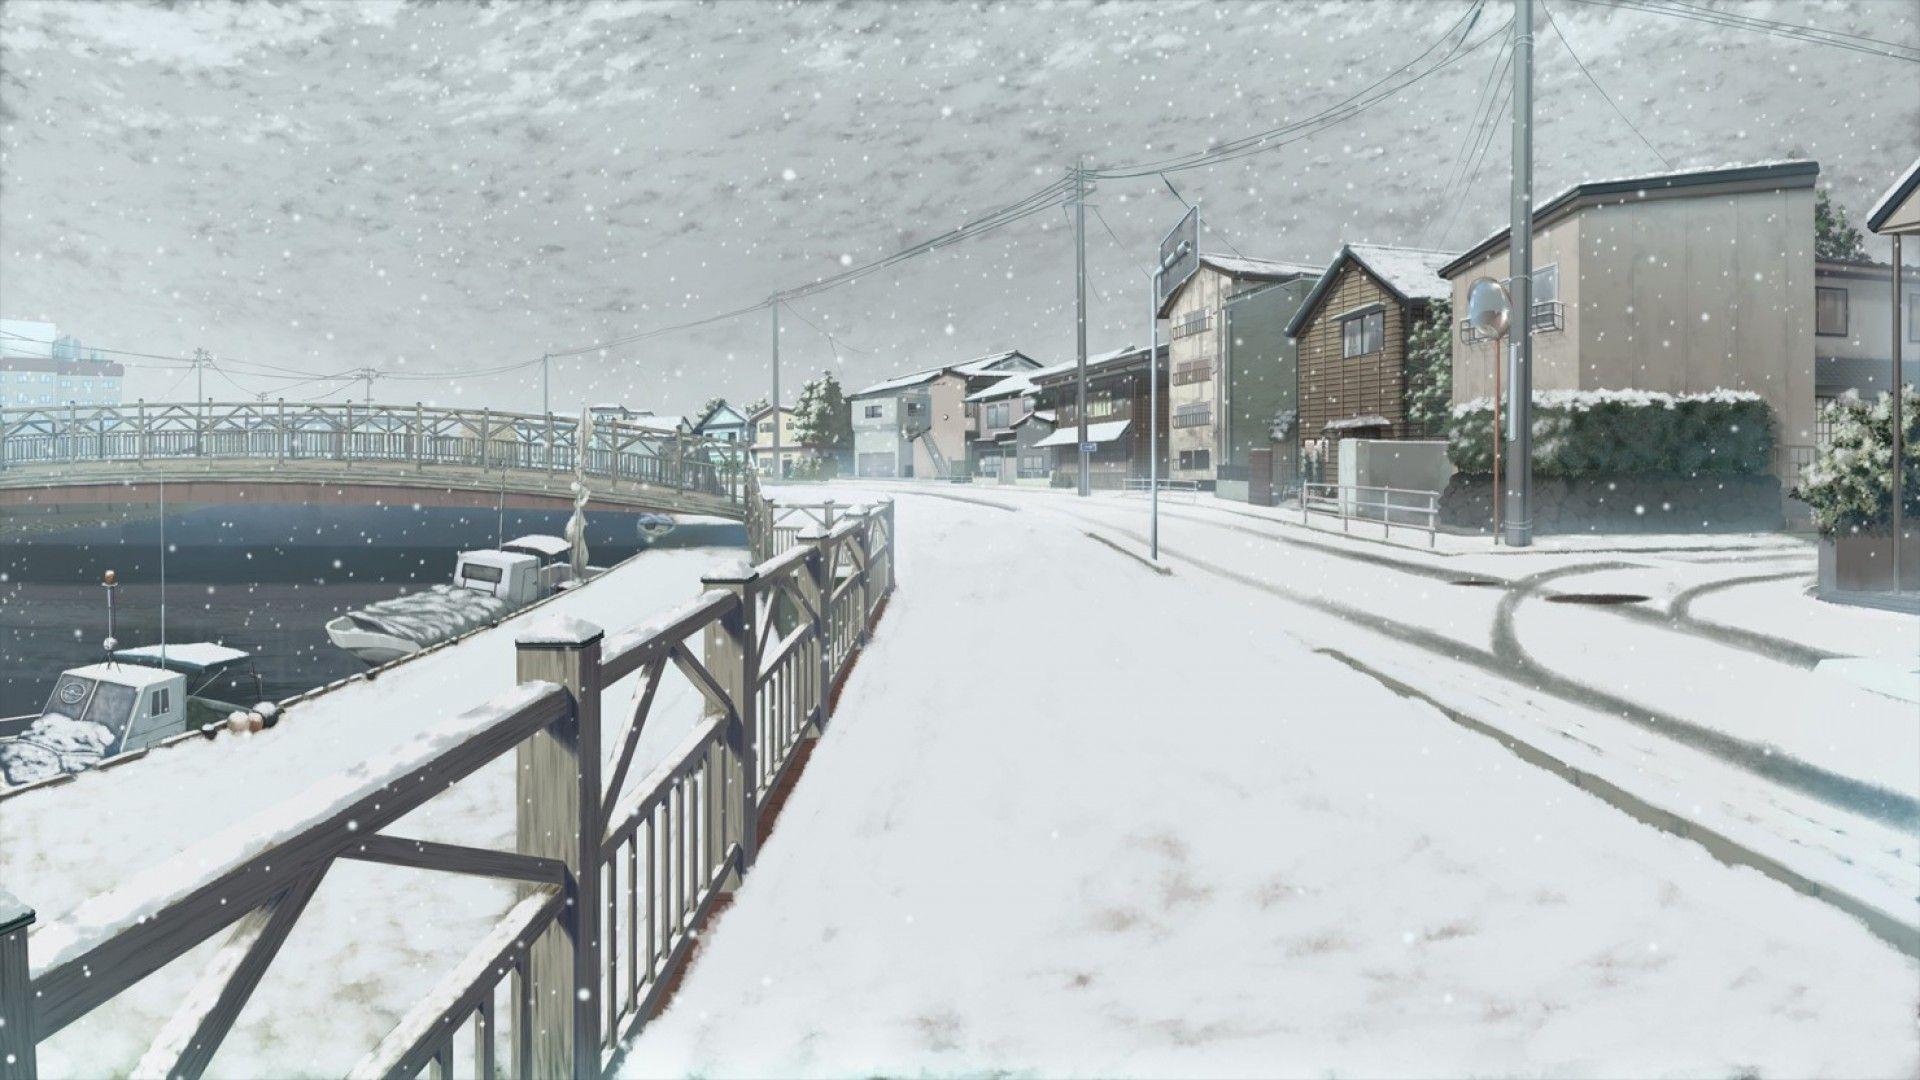 Anime Winter Scenery HD Wallpaperx1080. Winter scenery, Scenery wallpaper, Anime scenery